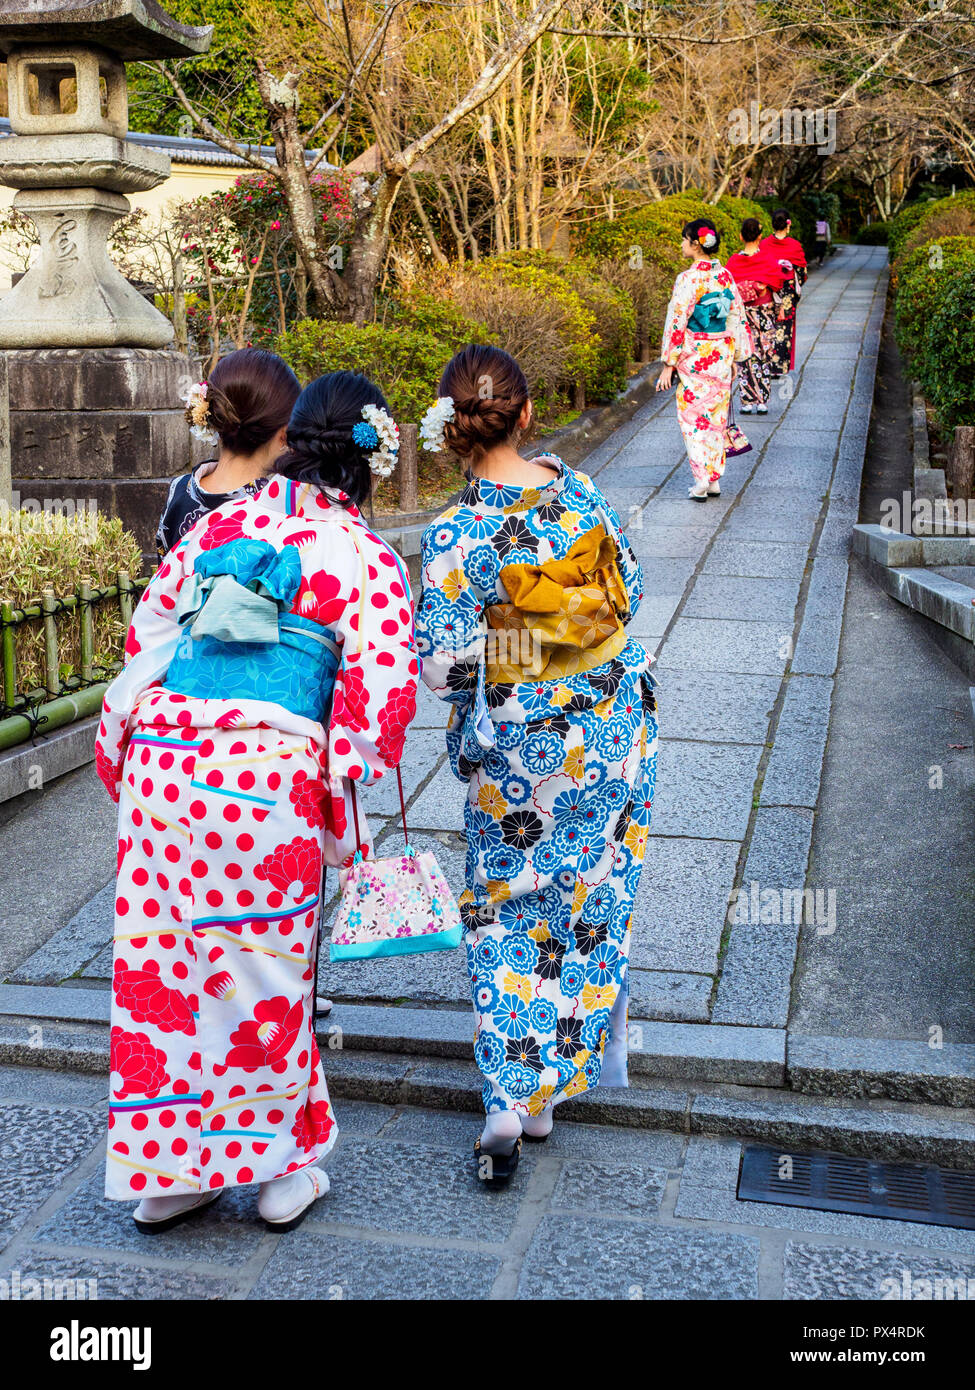 Kyoto Japan Kimono traditionelle japanische Kleidung - Frauen gehen in den Tempel im traditionellen Kimono Bademäntel in der japanischen Stadt Kyoto gekleidet Stockfoto